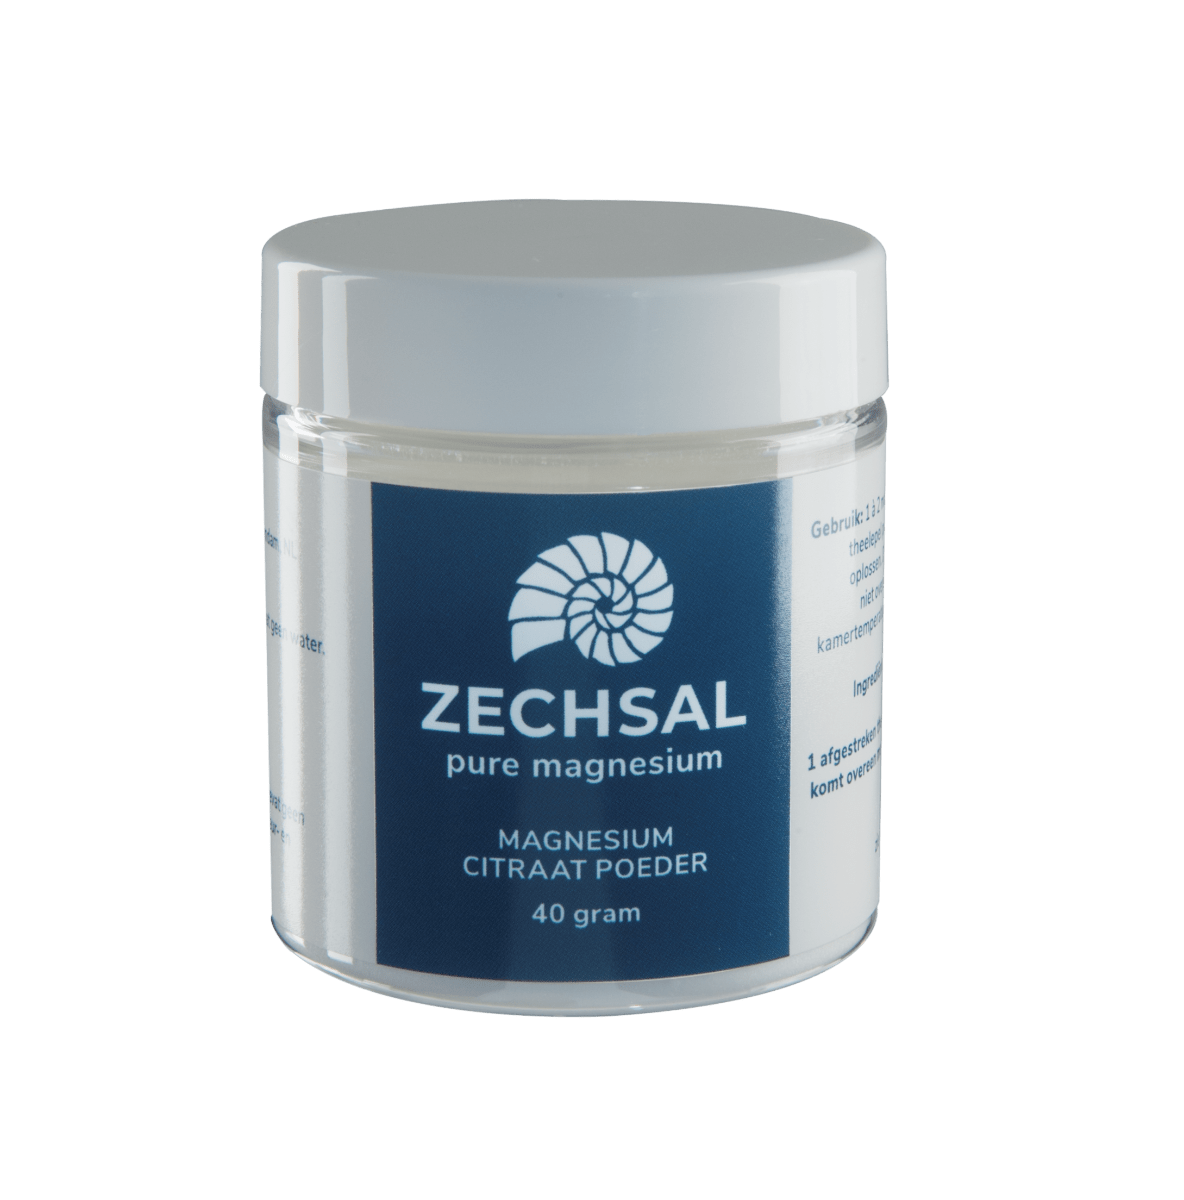 Geweldig Ambient strijd Zechsal magnesiumcitrate powder small, 40 g. | Zechsal